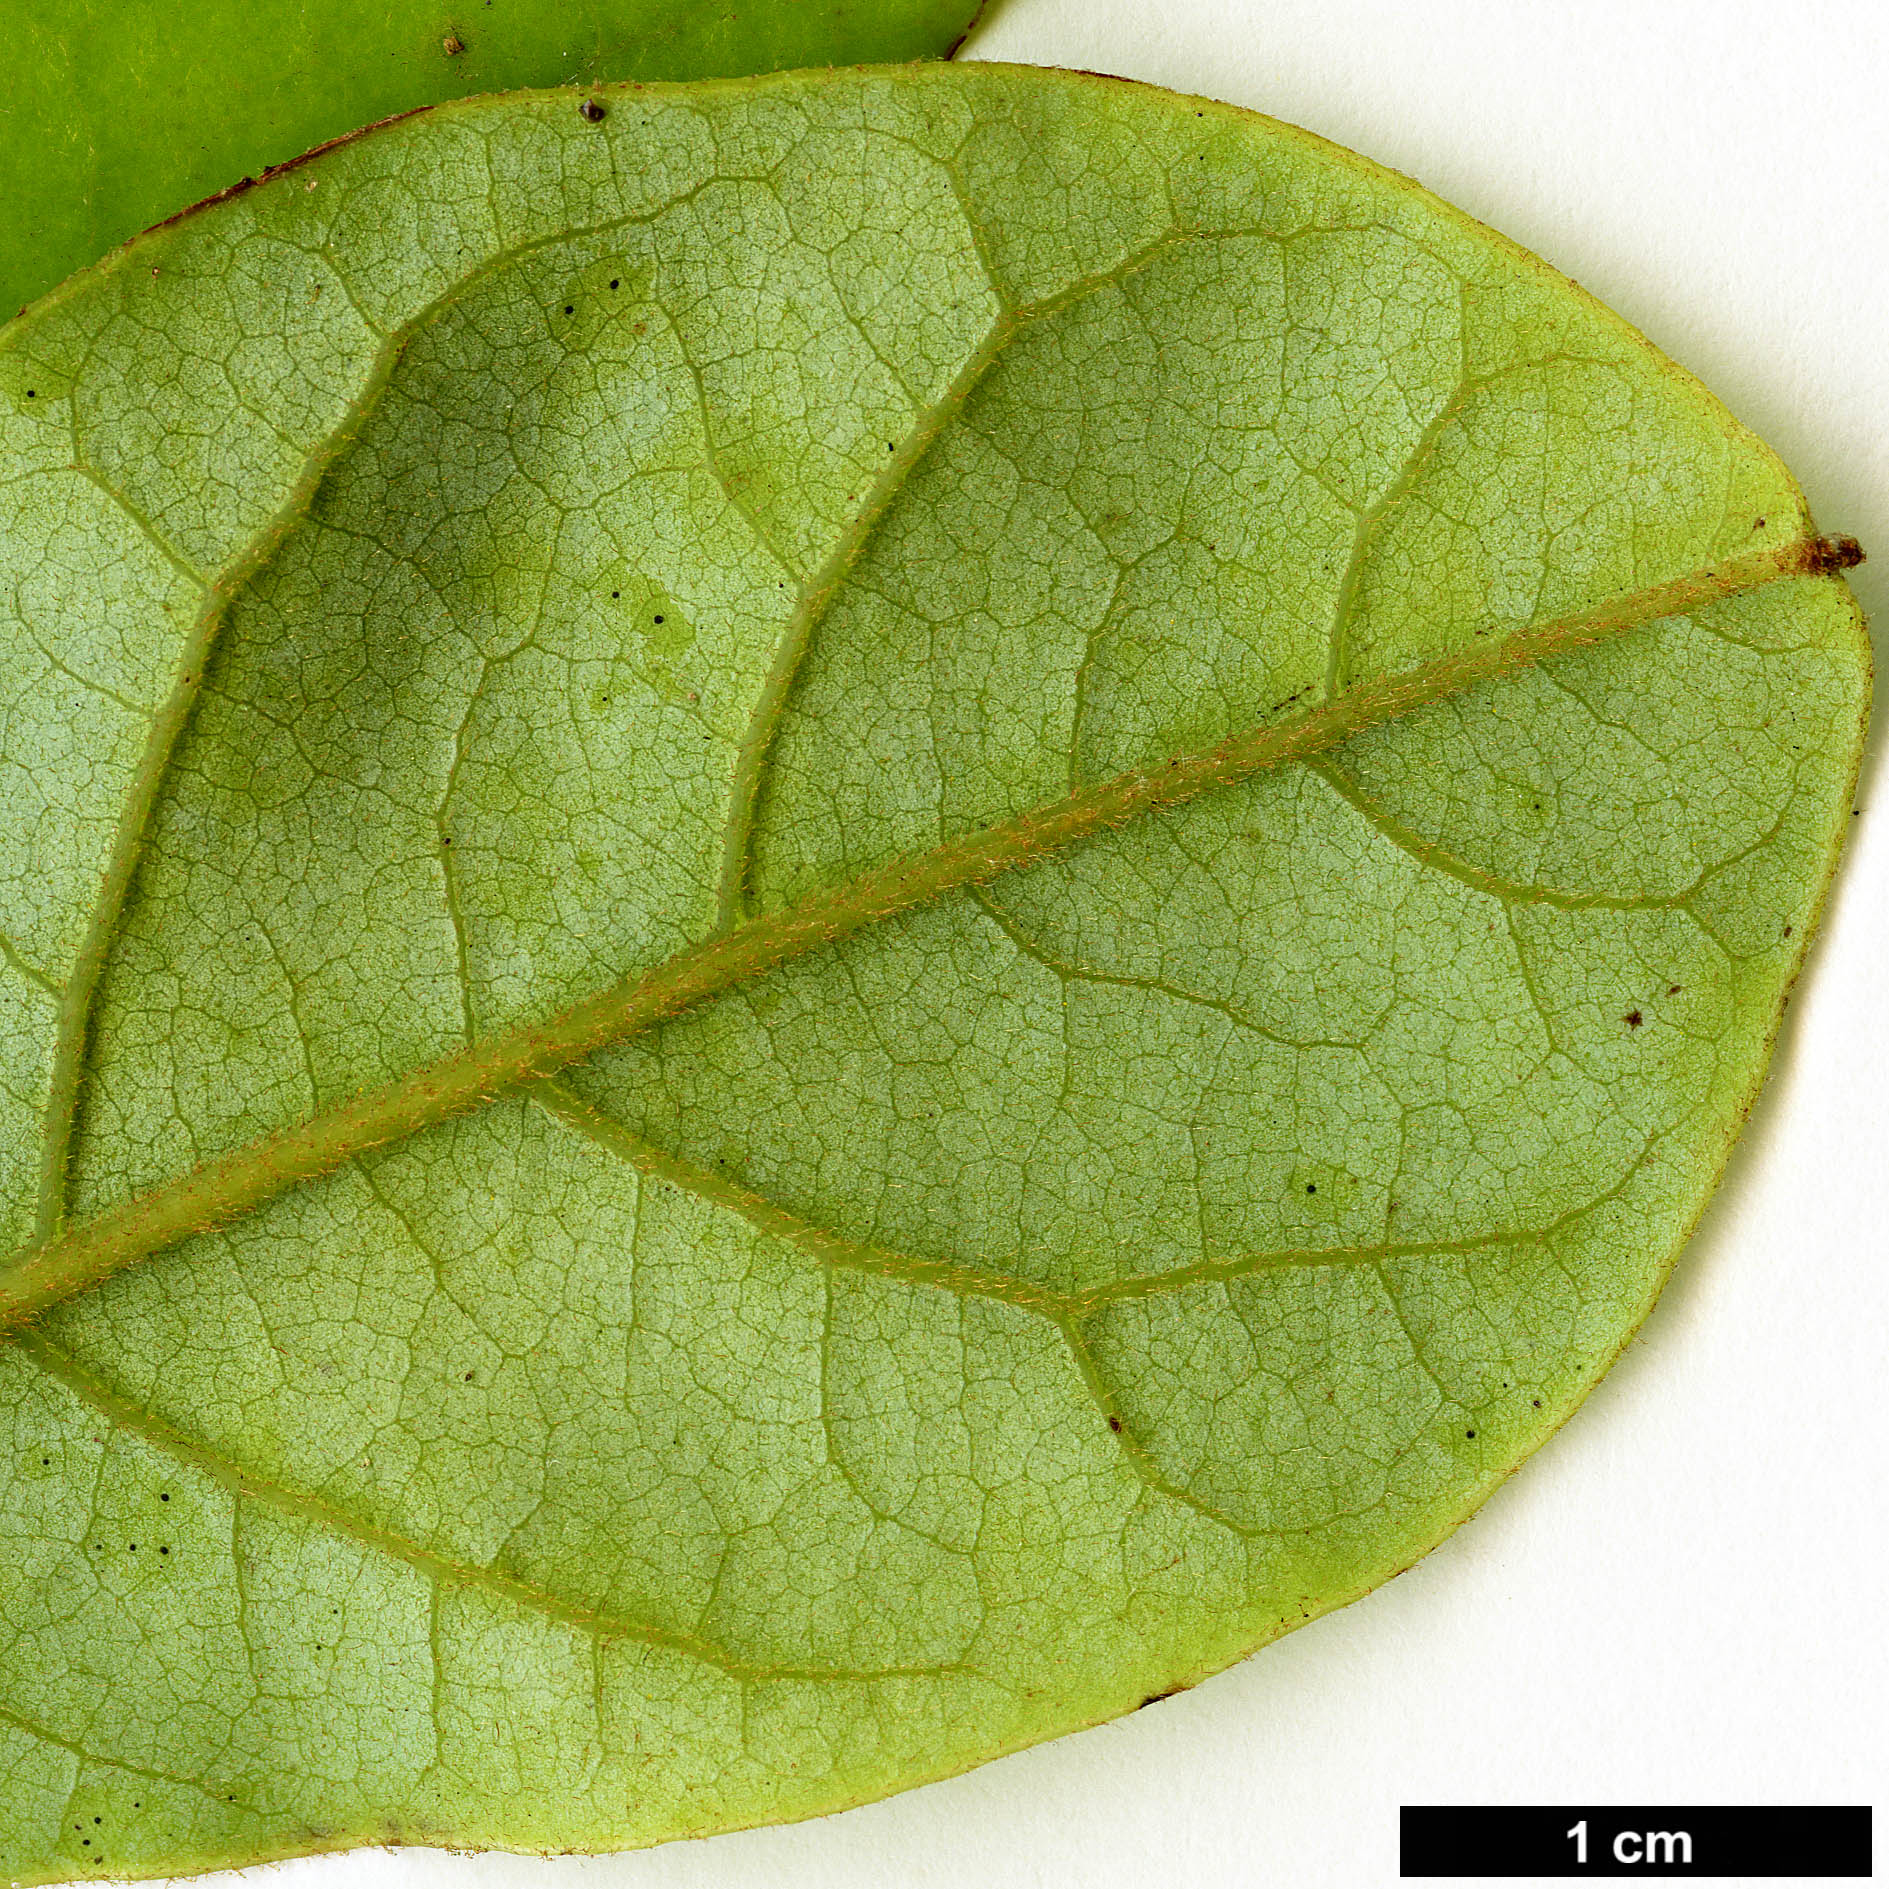 High resolution image: Family: Lauraceae - Genus: Beilschmiedia - Taxon: tarairi